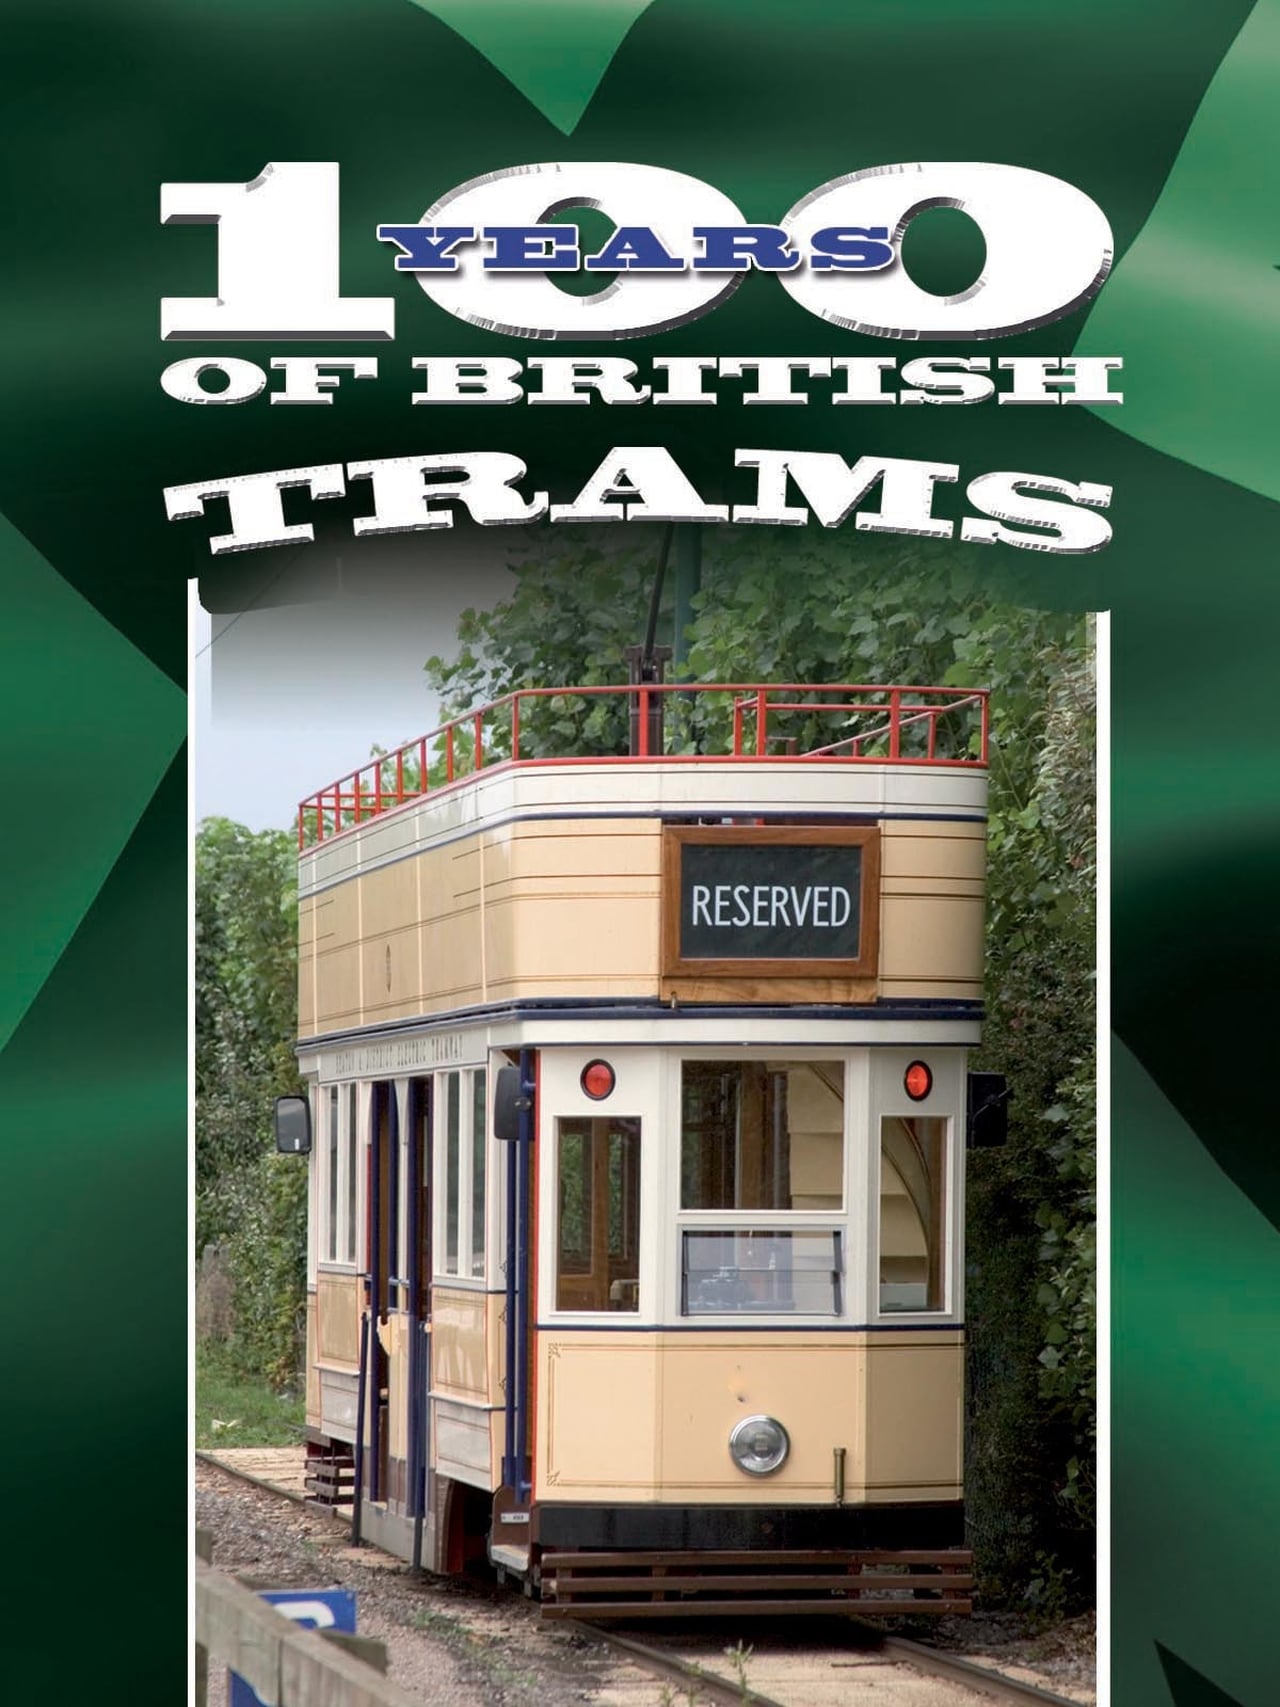 100 Years of British Trams